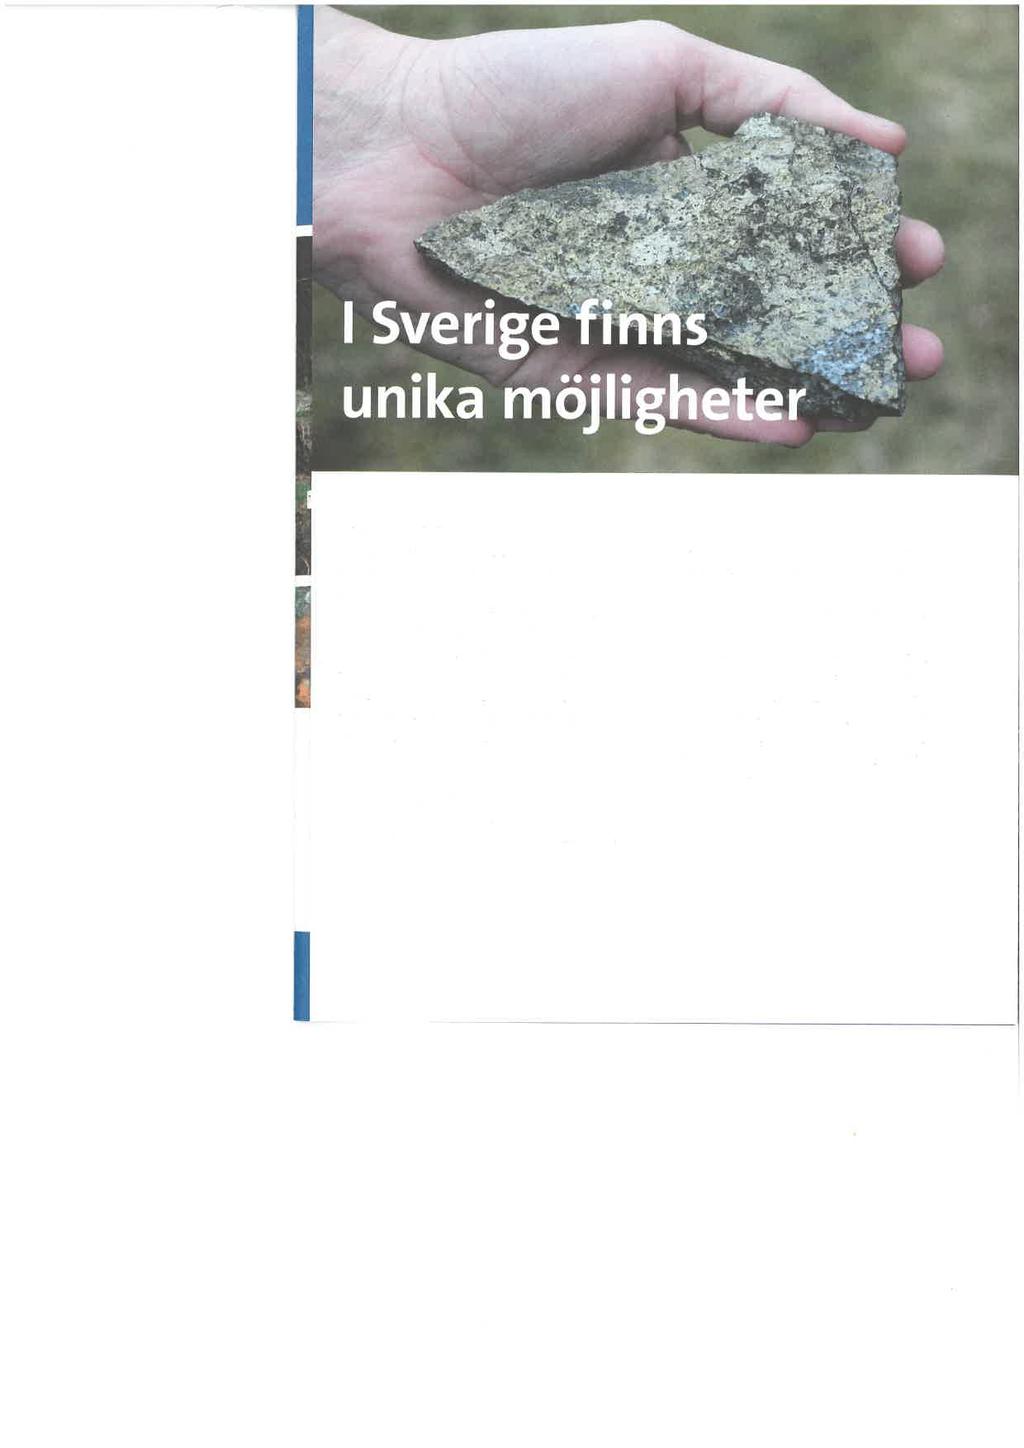 Unik berggrund Sverige har en unik berggrund, med stor potential för att finna och utvinna de mineral vi är beroende av. Redan idag är svensk mineralutvinning en viktig bas för export.